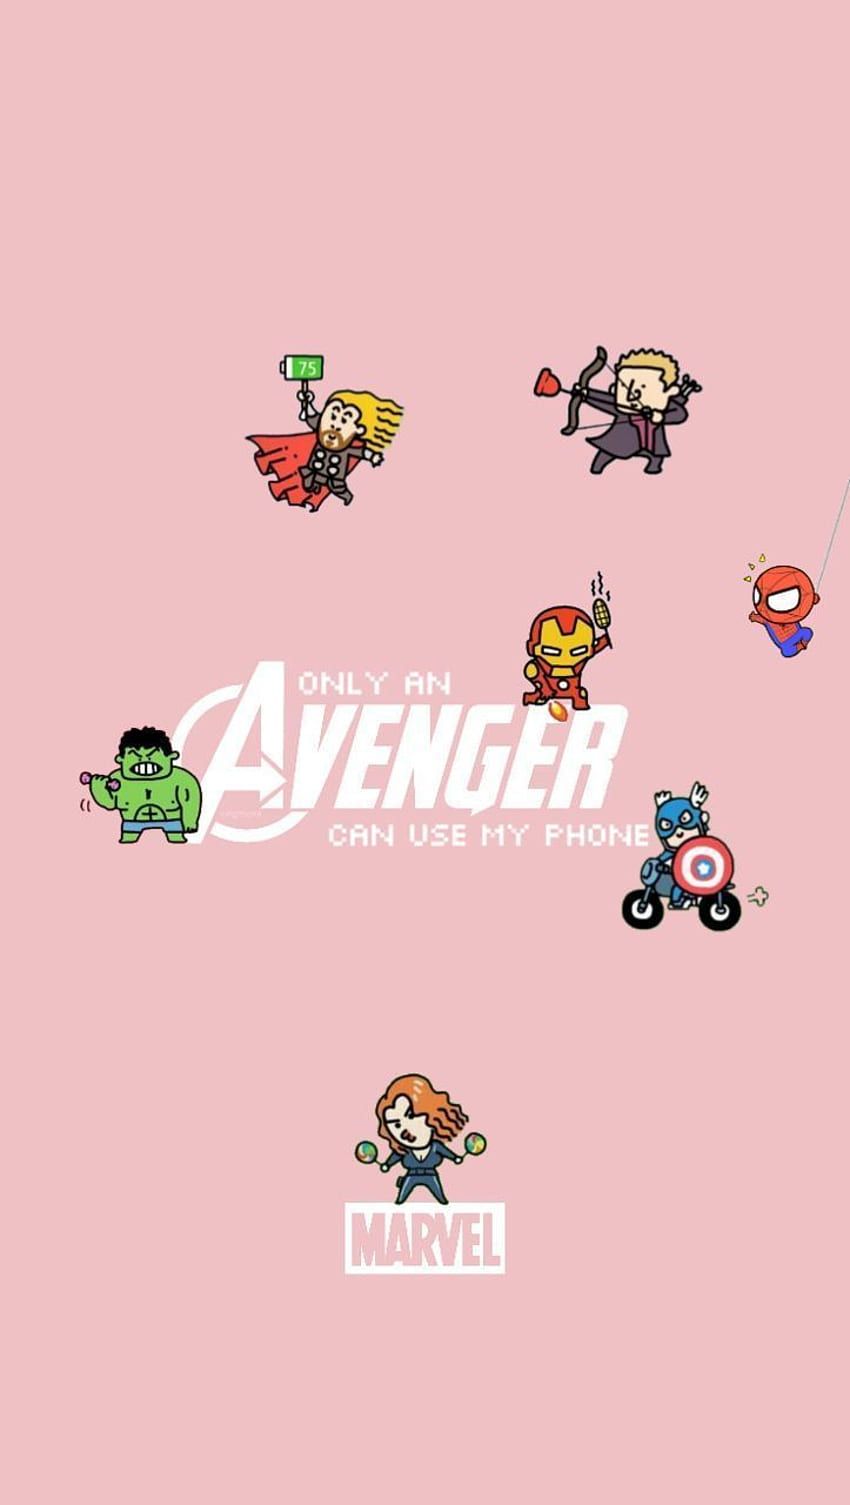 The avengers wallpaper for your phone - Marvel, Avengers